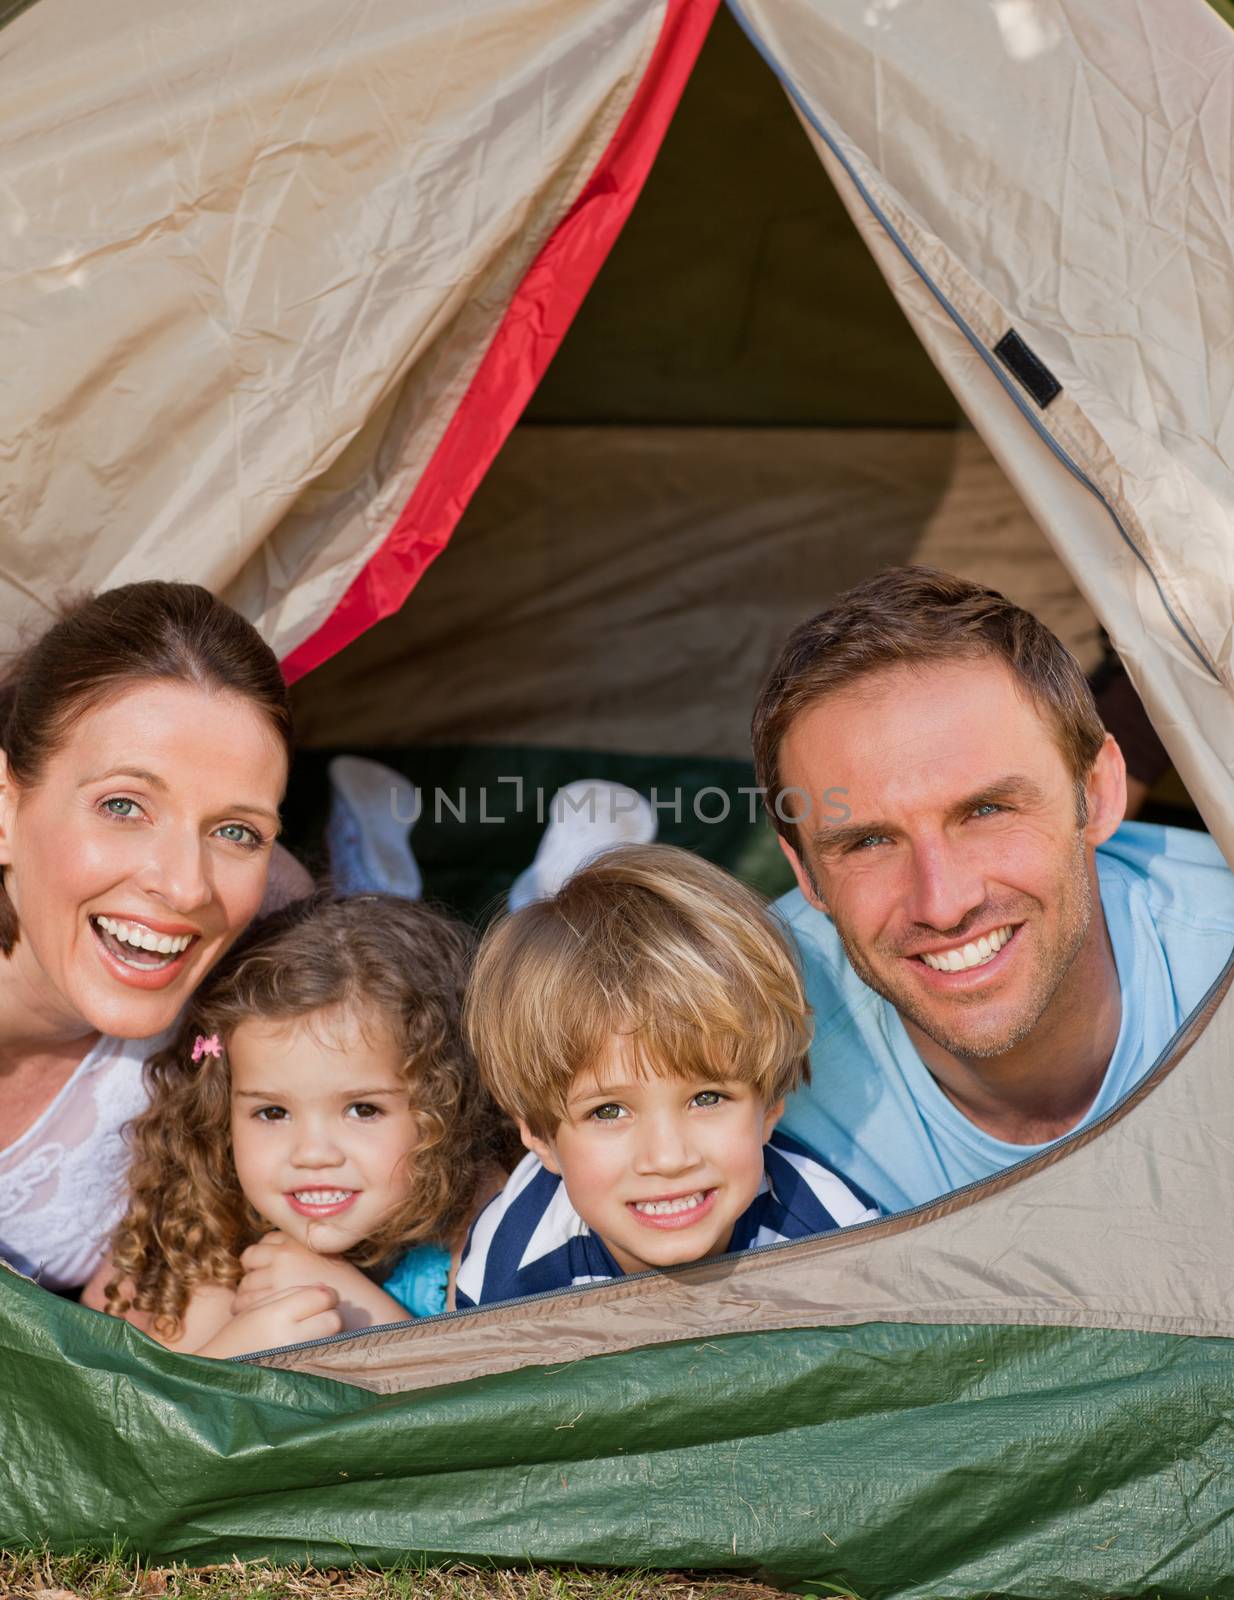 Joyful family camping in the garden by Wavebreakmedia